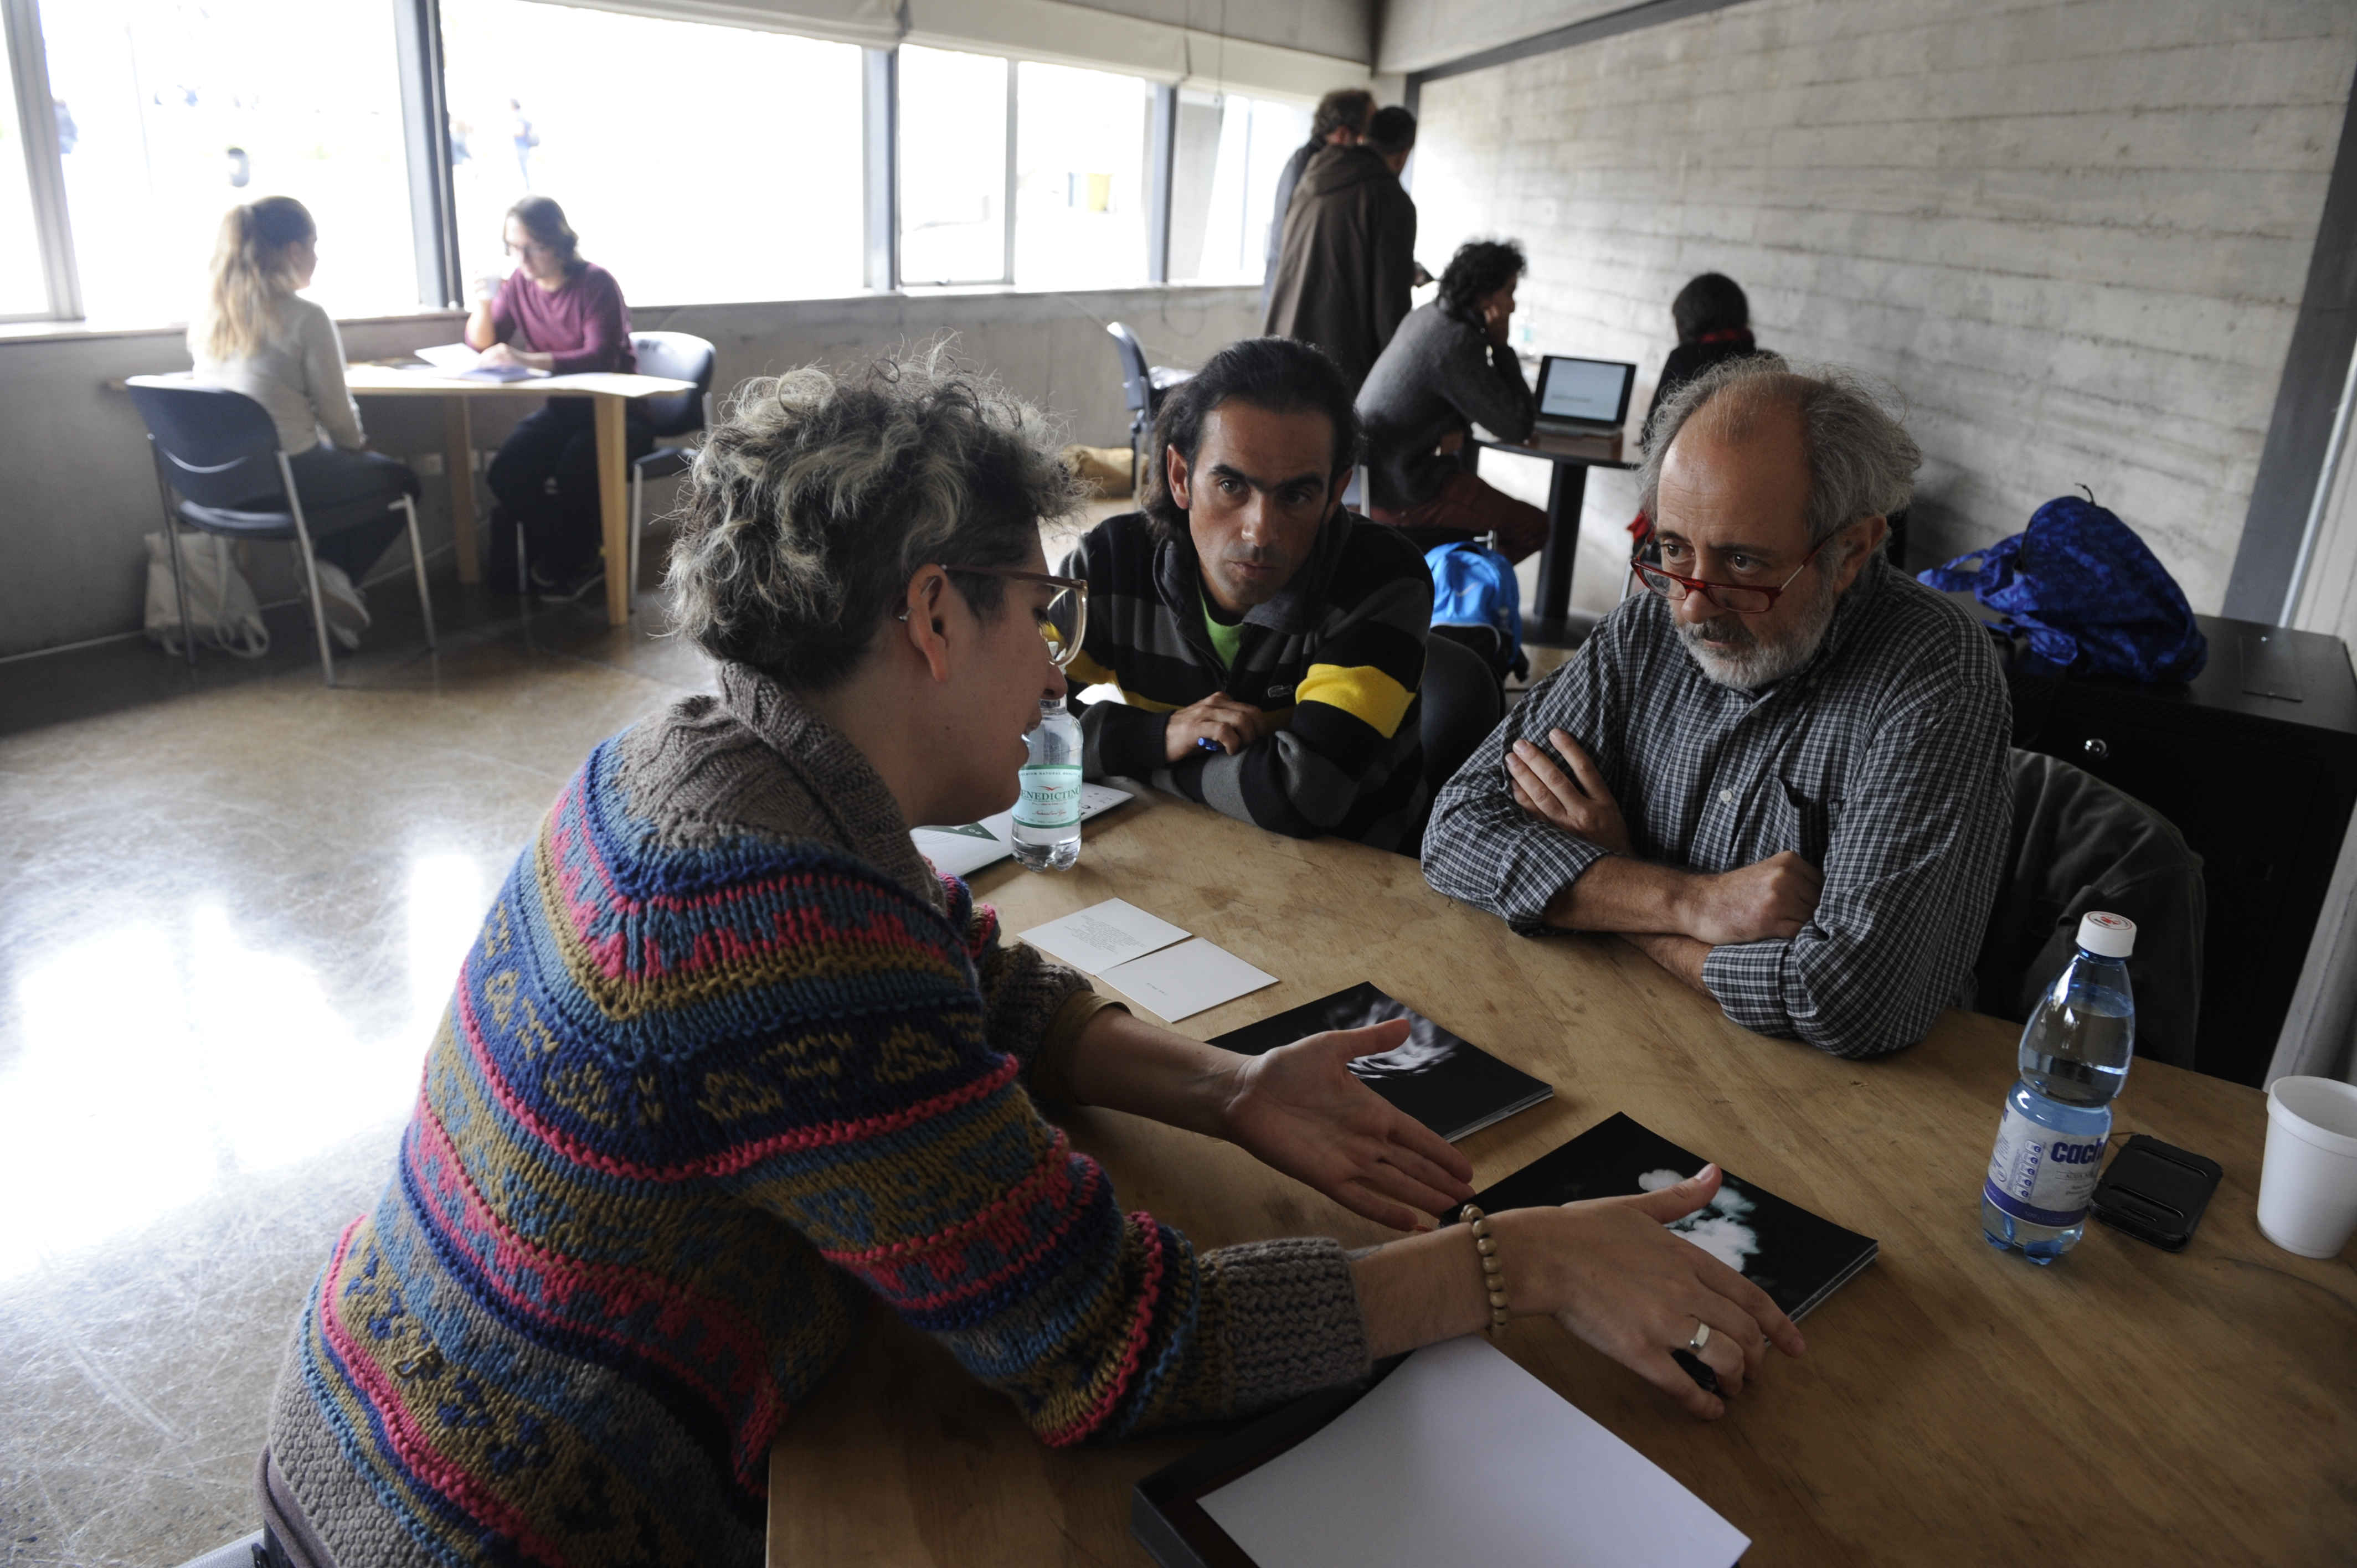 Maestros de la imagen inician revisión de portafolios en la 7ª edición del Festival Internacional de Fotografía en Valparaíso FIFV 2016. ©Victor Ruiz Caballero